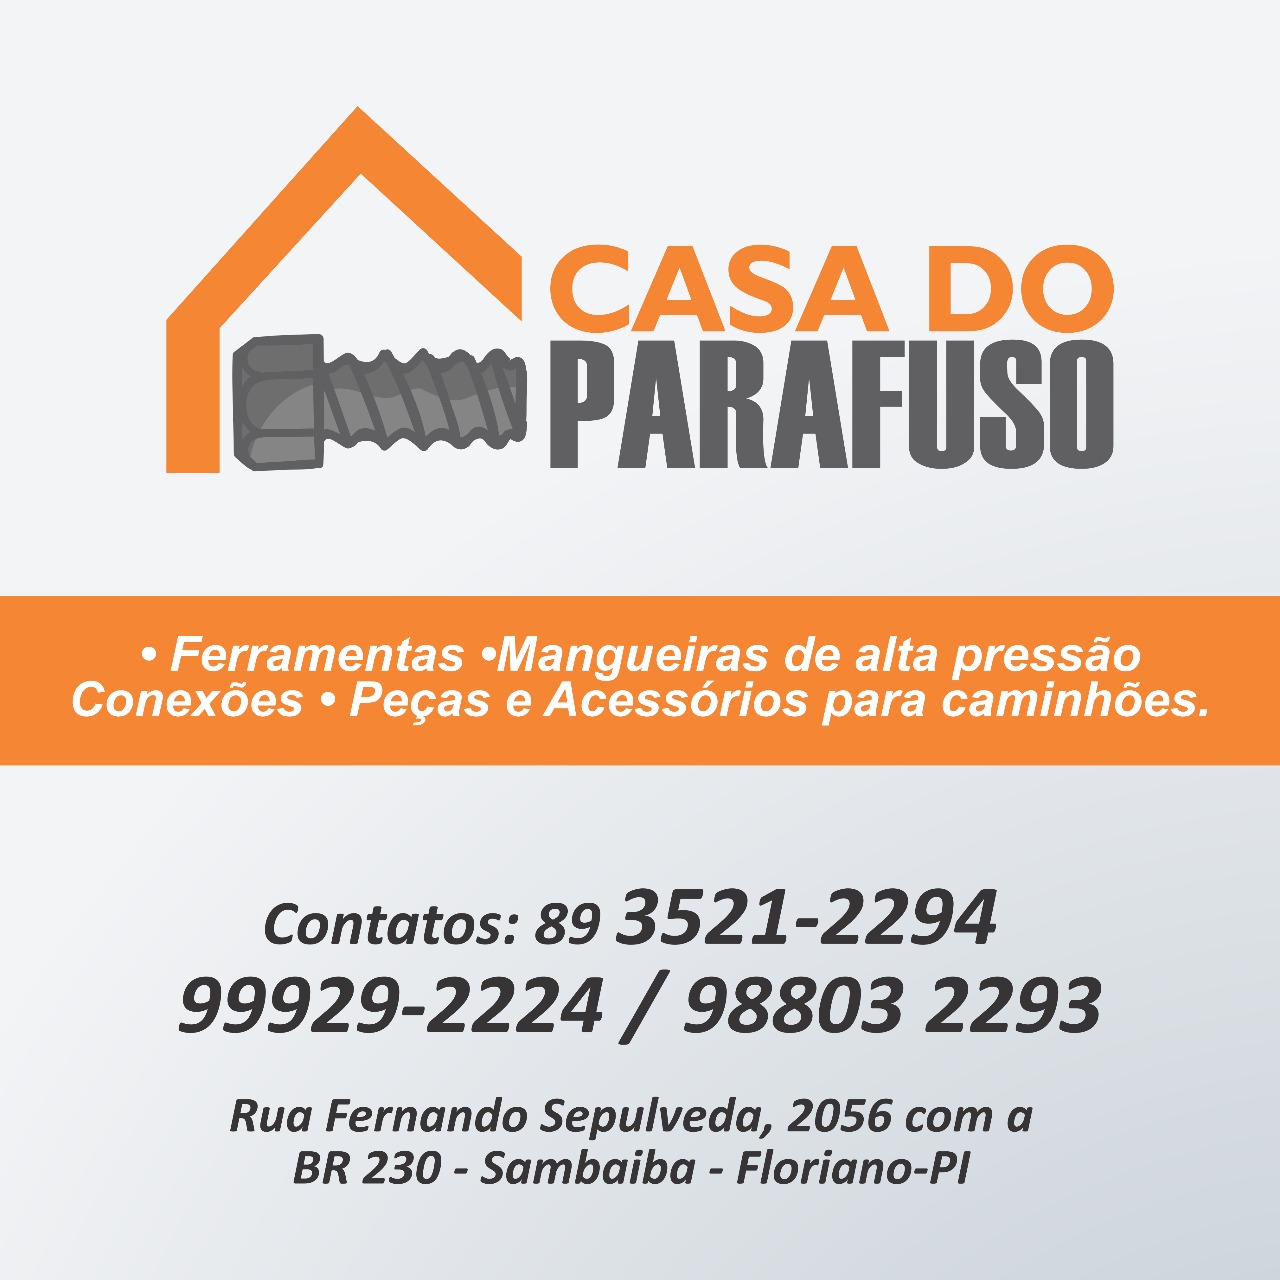 CASA DO PARAFUSO - Floriano, PI